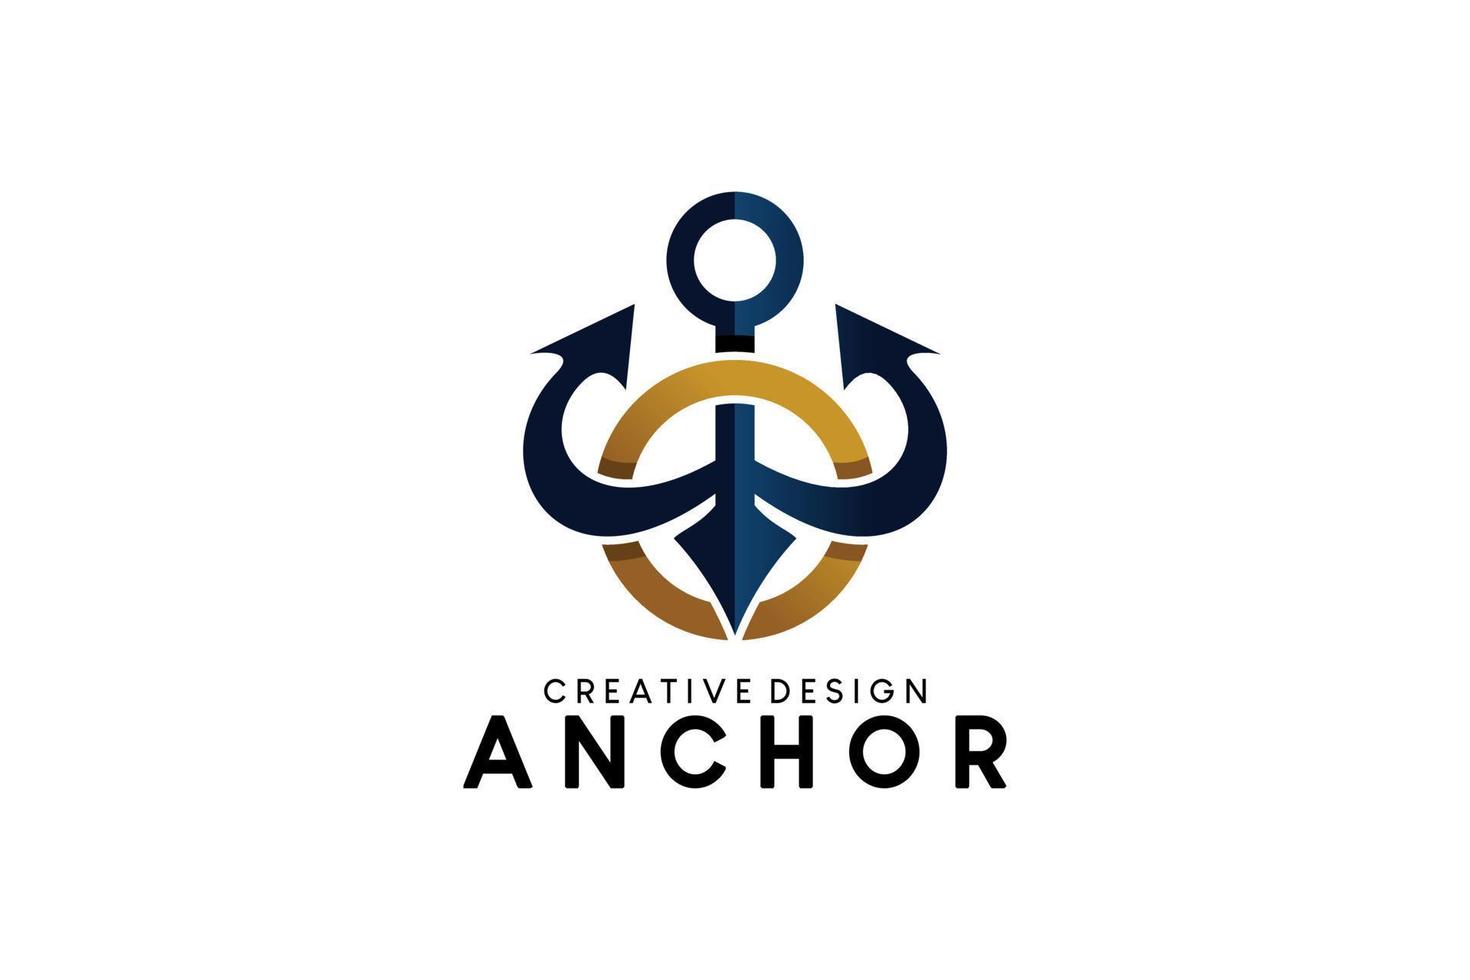 Anchor emblem logo design template, vector illustration